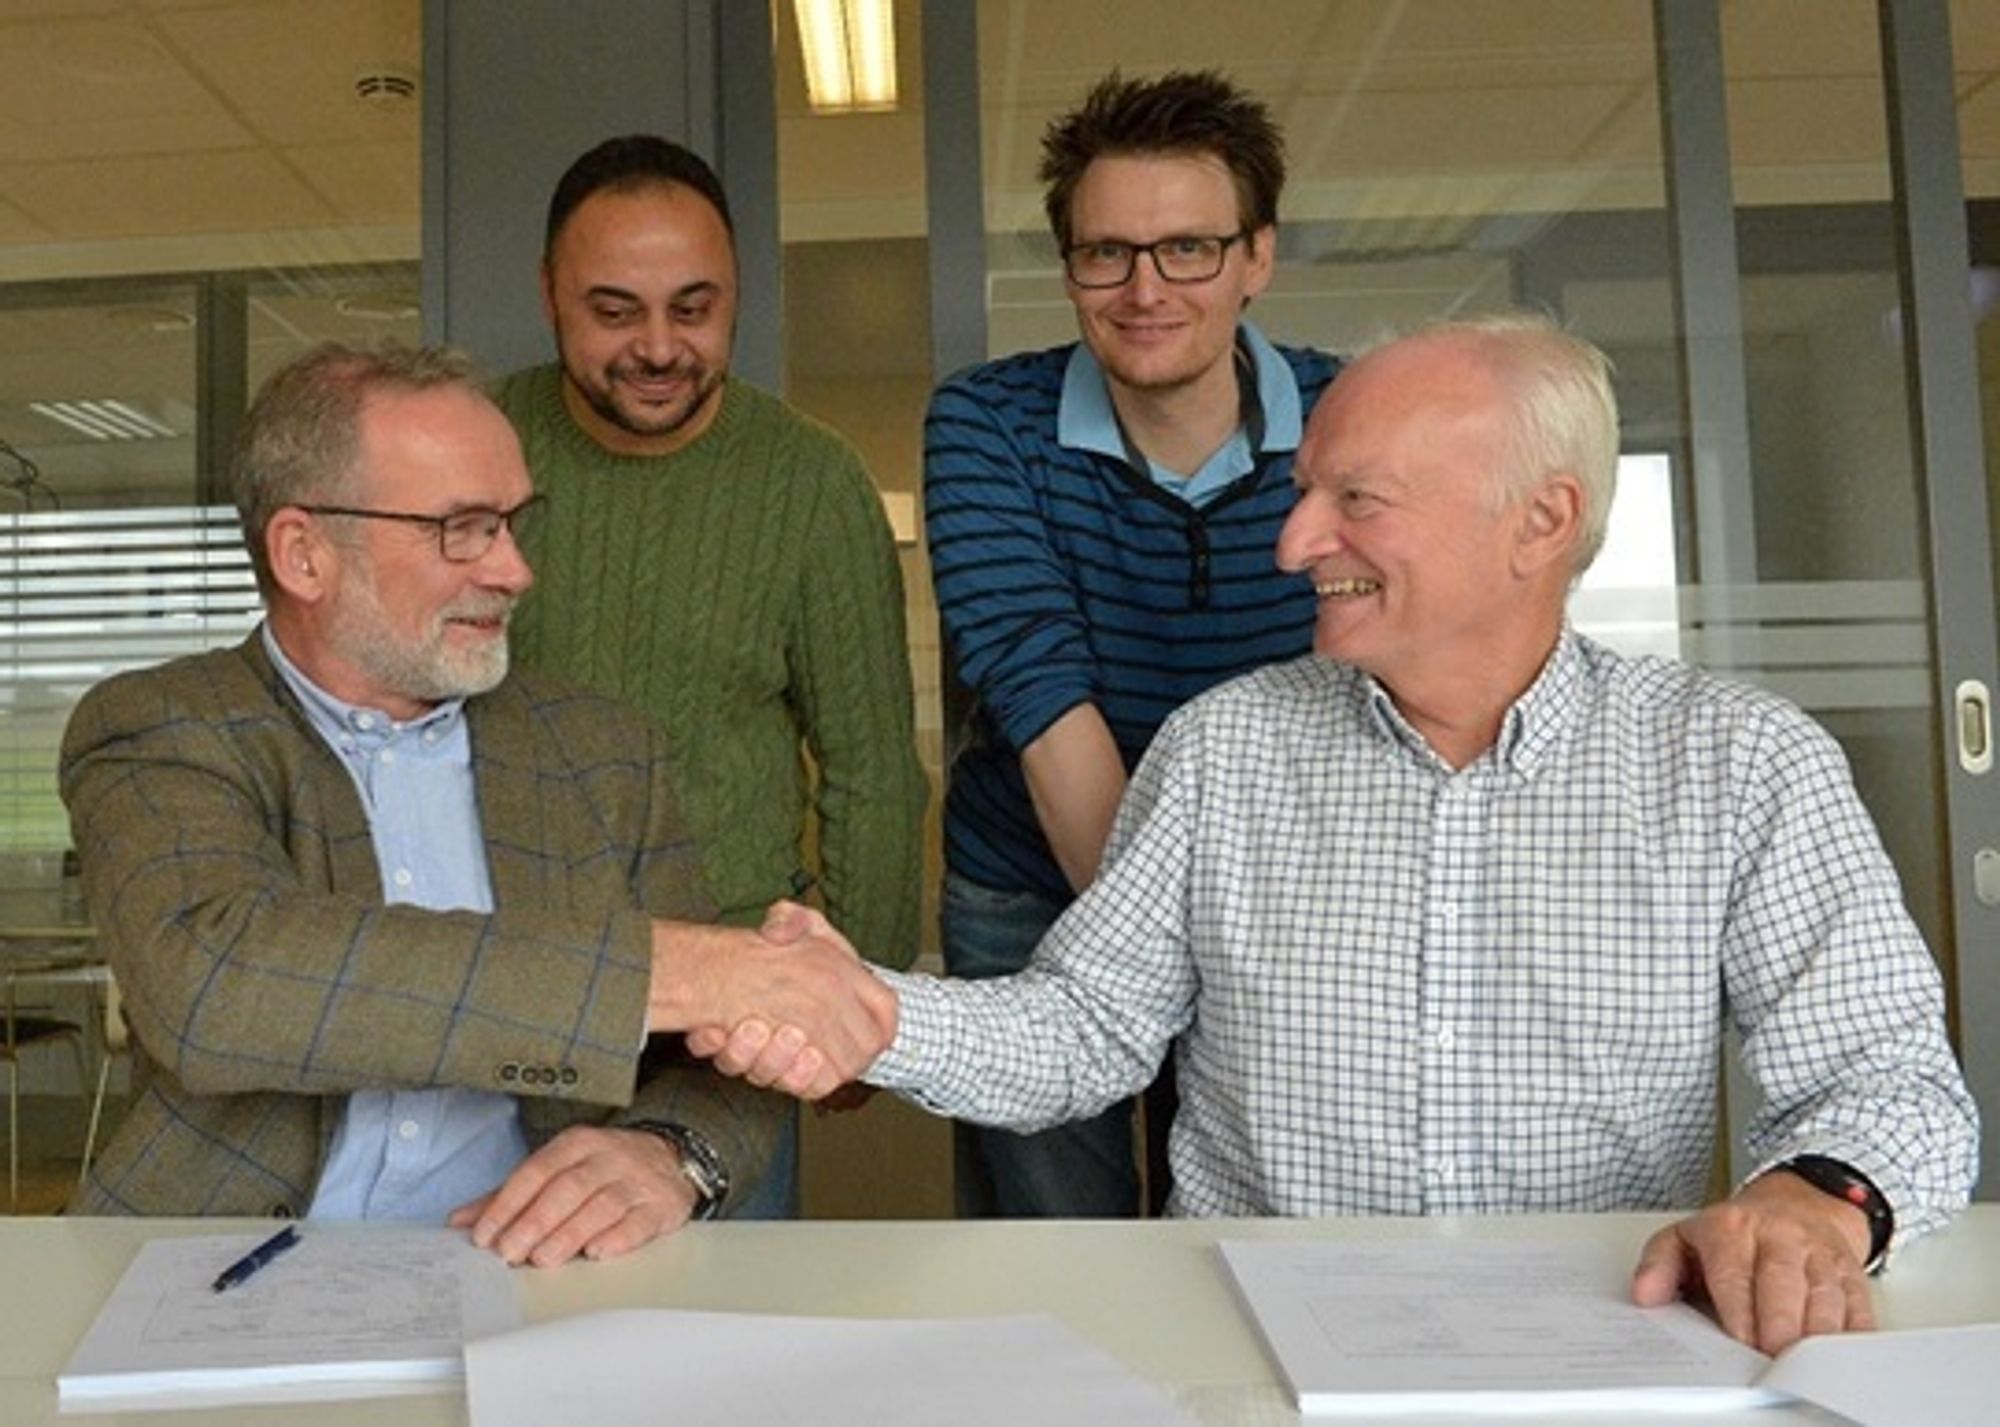 Daglig leder Leiv Pedersen i Amberg Norge og prosjektdirektør Tor Geir Espedal i Statens Vegvesen signerer kontrakten sammen med kontrollingeniørne som skal bruke utstyret